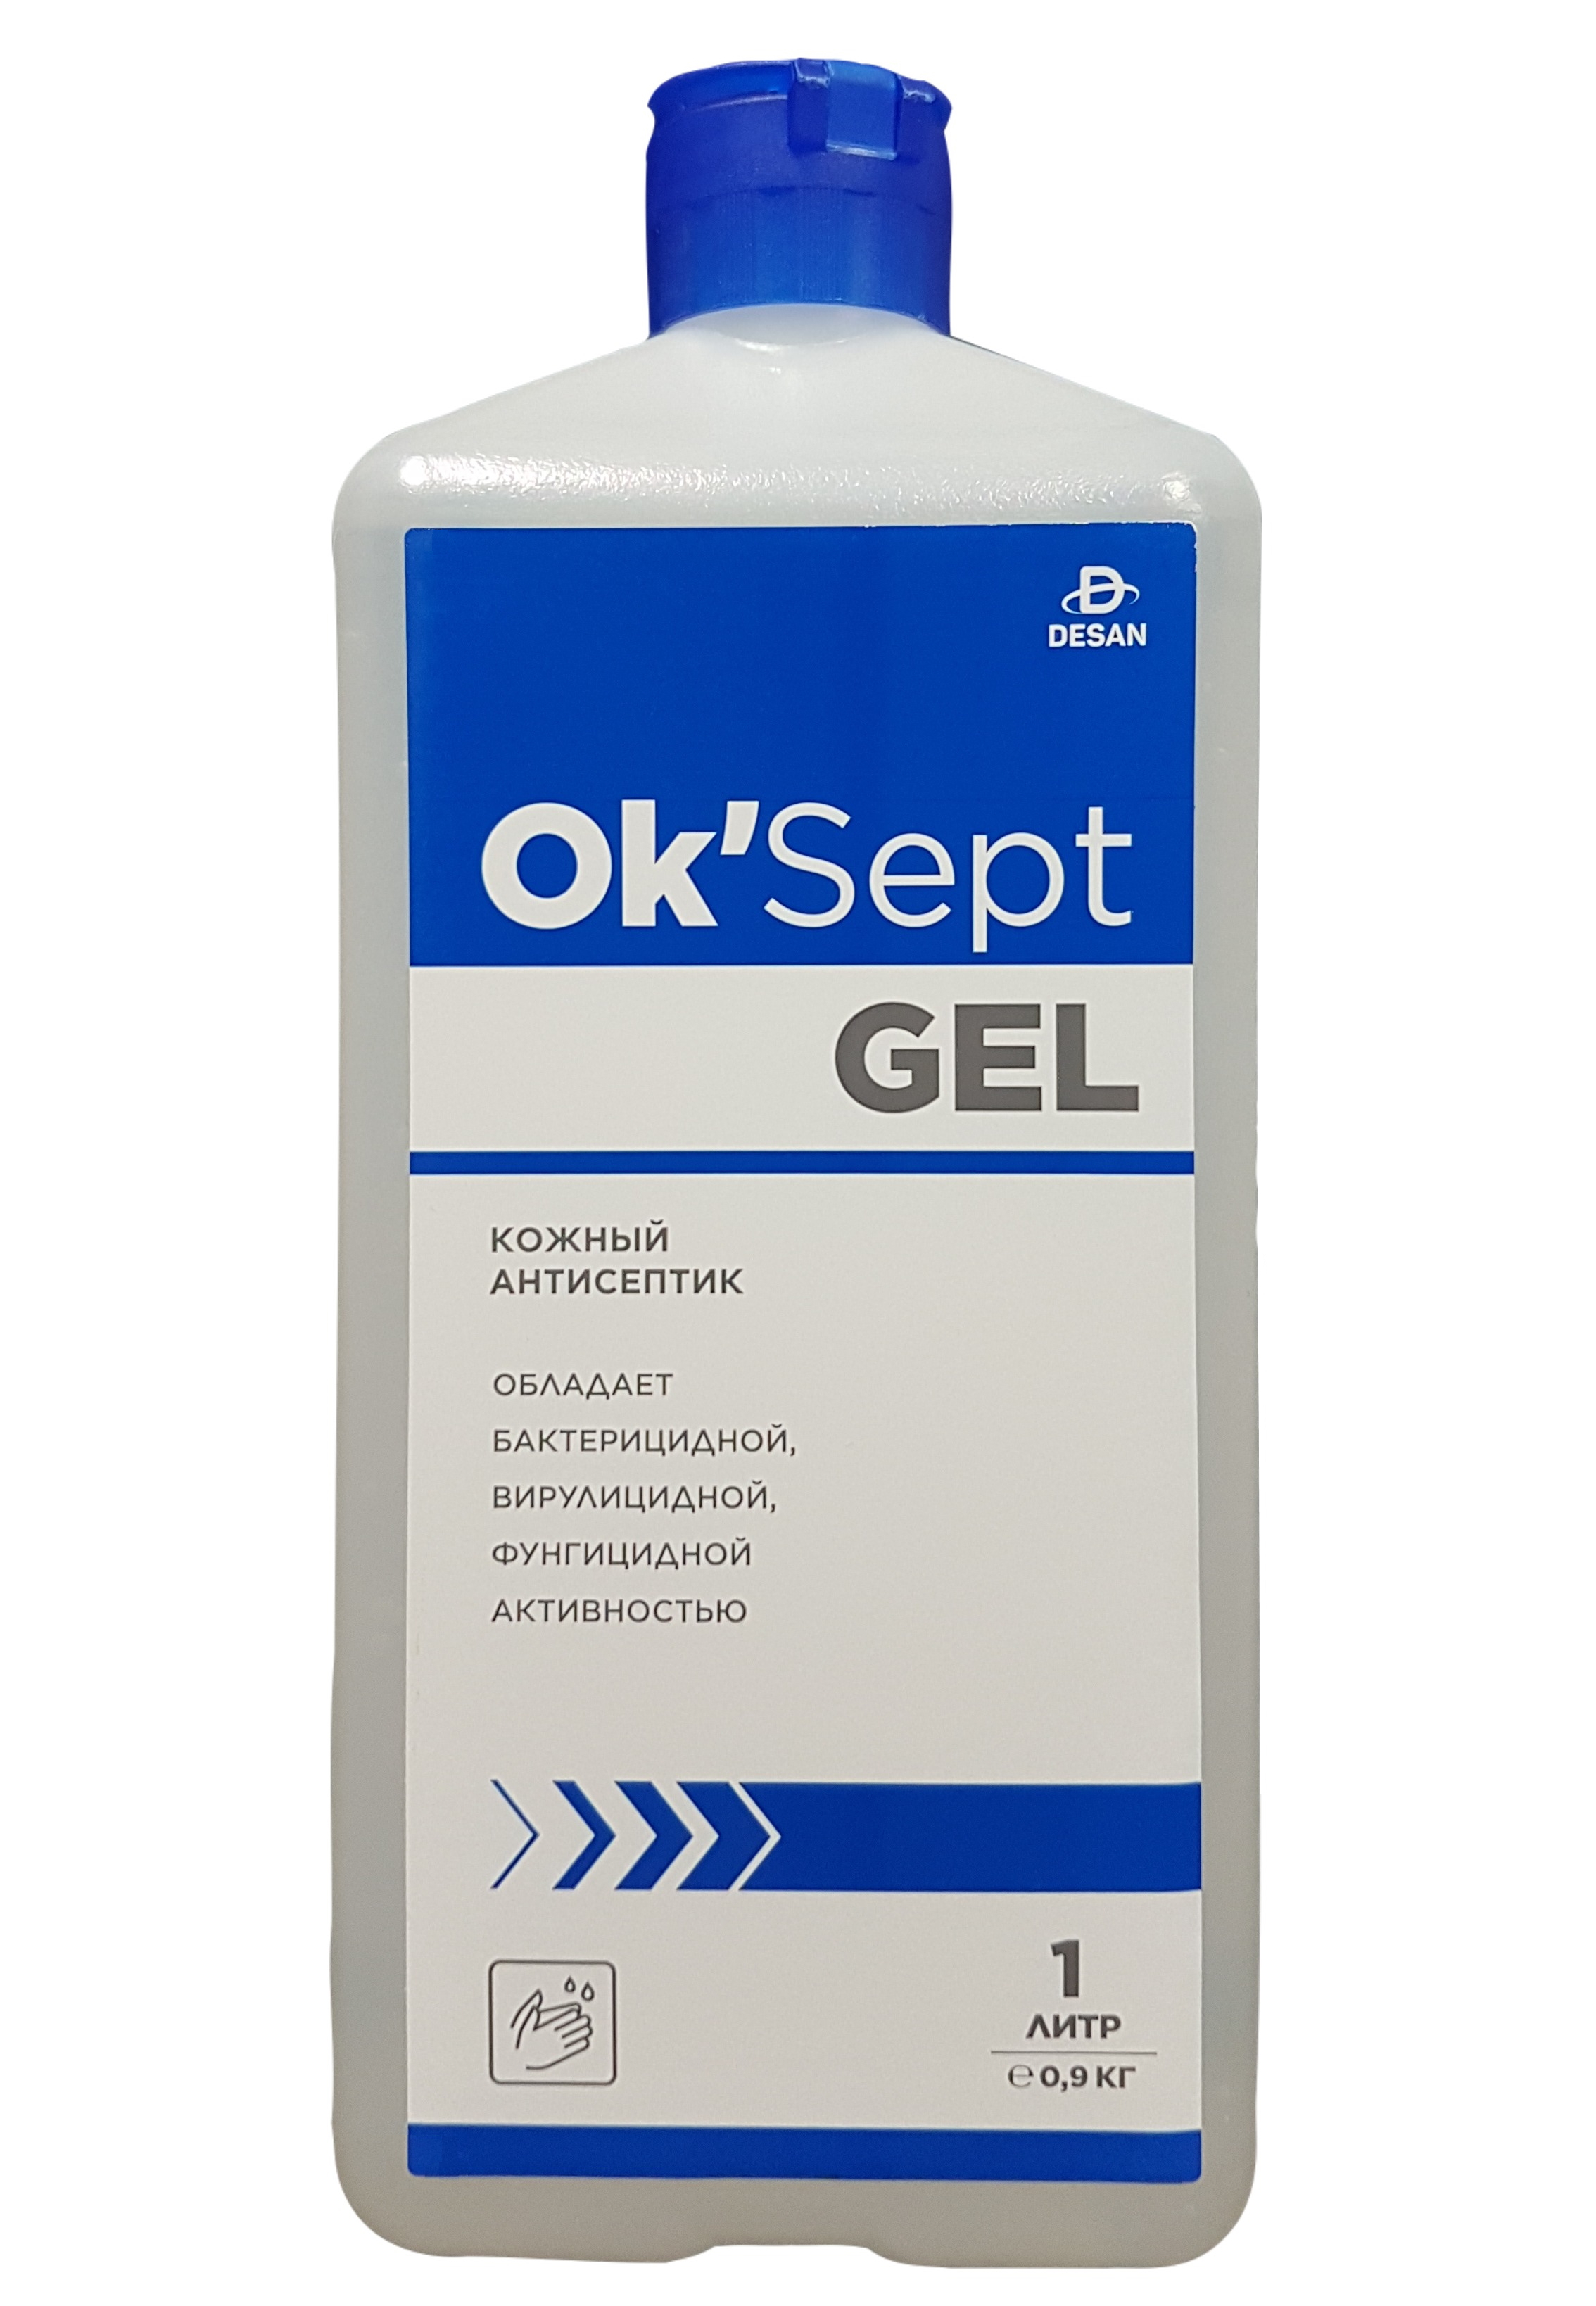 Антисептическое средство OK’Sept gel (ОК'Септ гель) 1 литр антисептическое средство астрадез септ 250 мл спрей